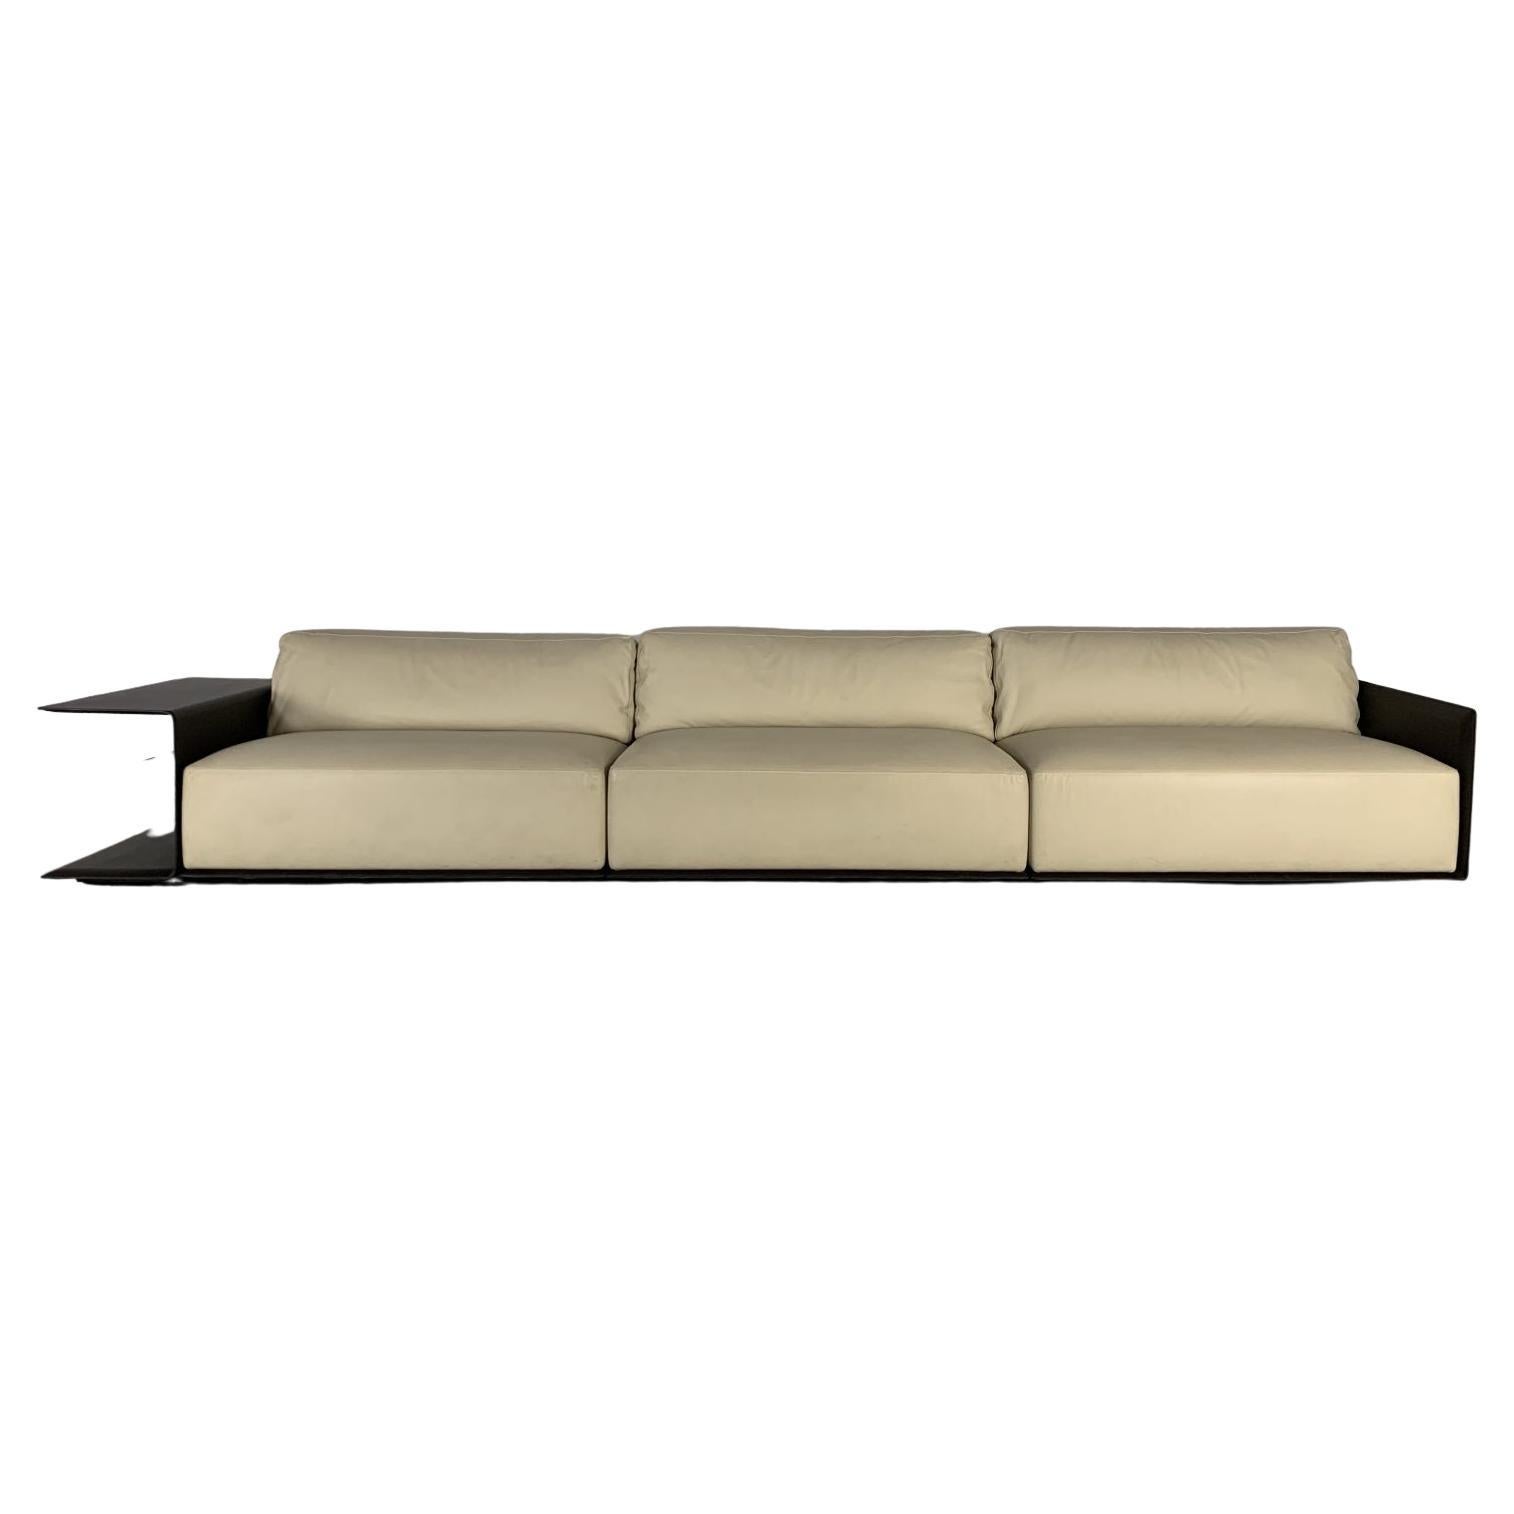 Sublime Poltrona Frau “Cassiopea” Large Sofa with Bookcase-End in Saddle Leather